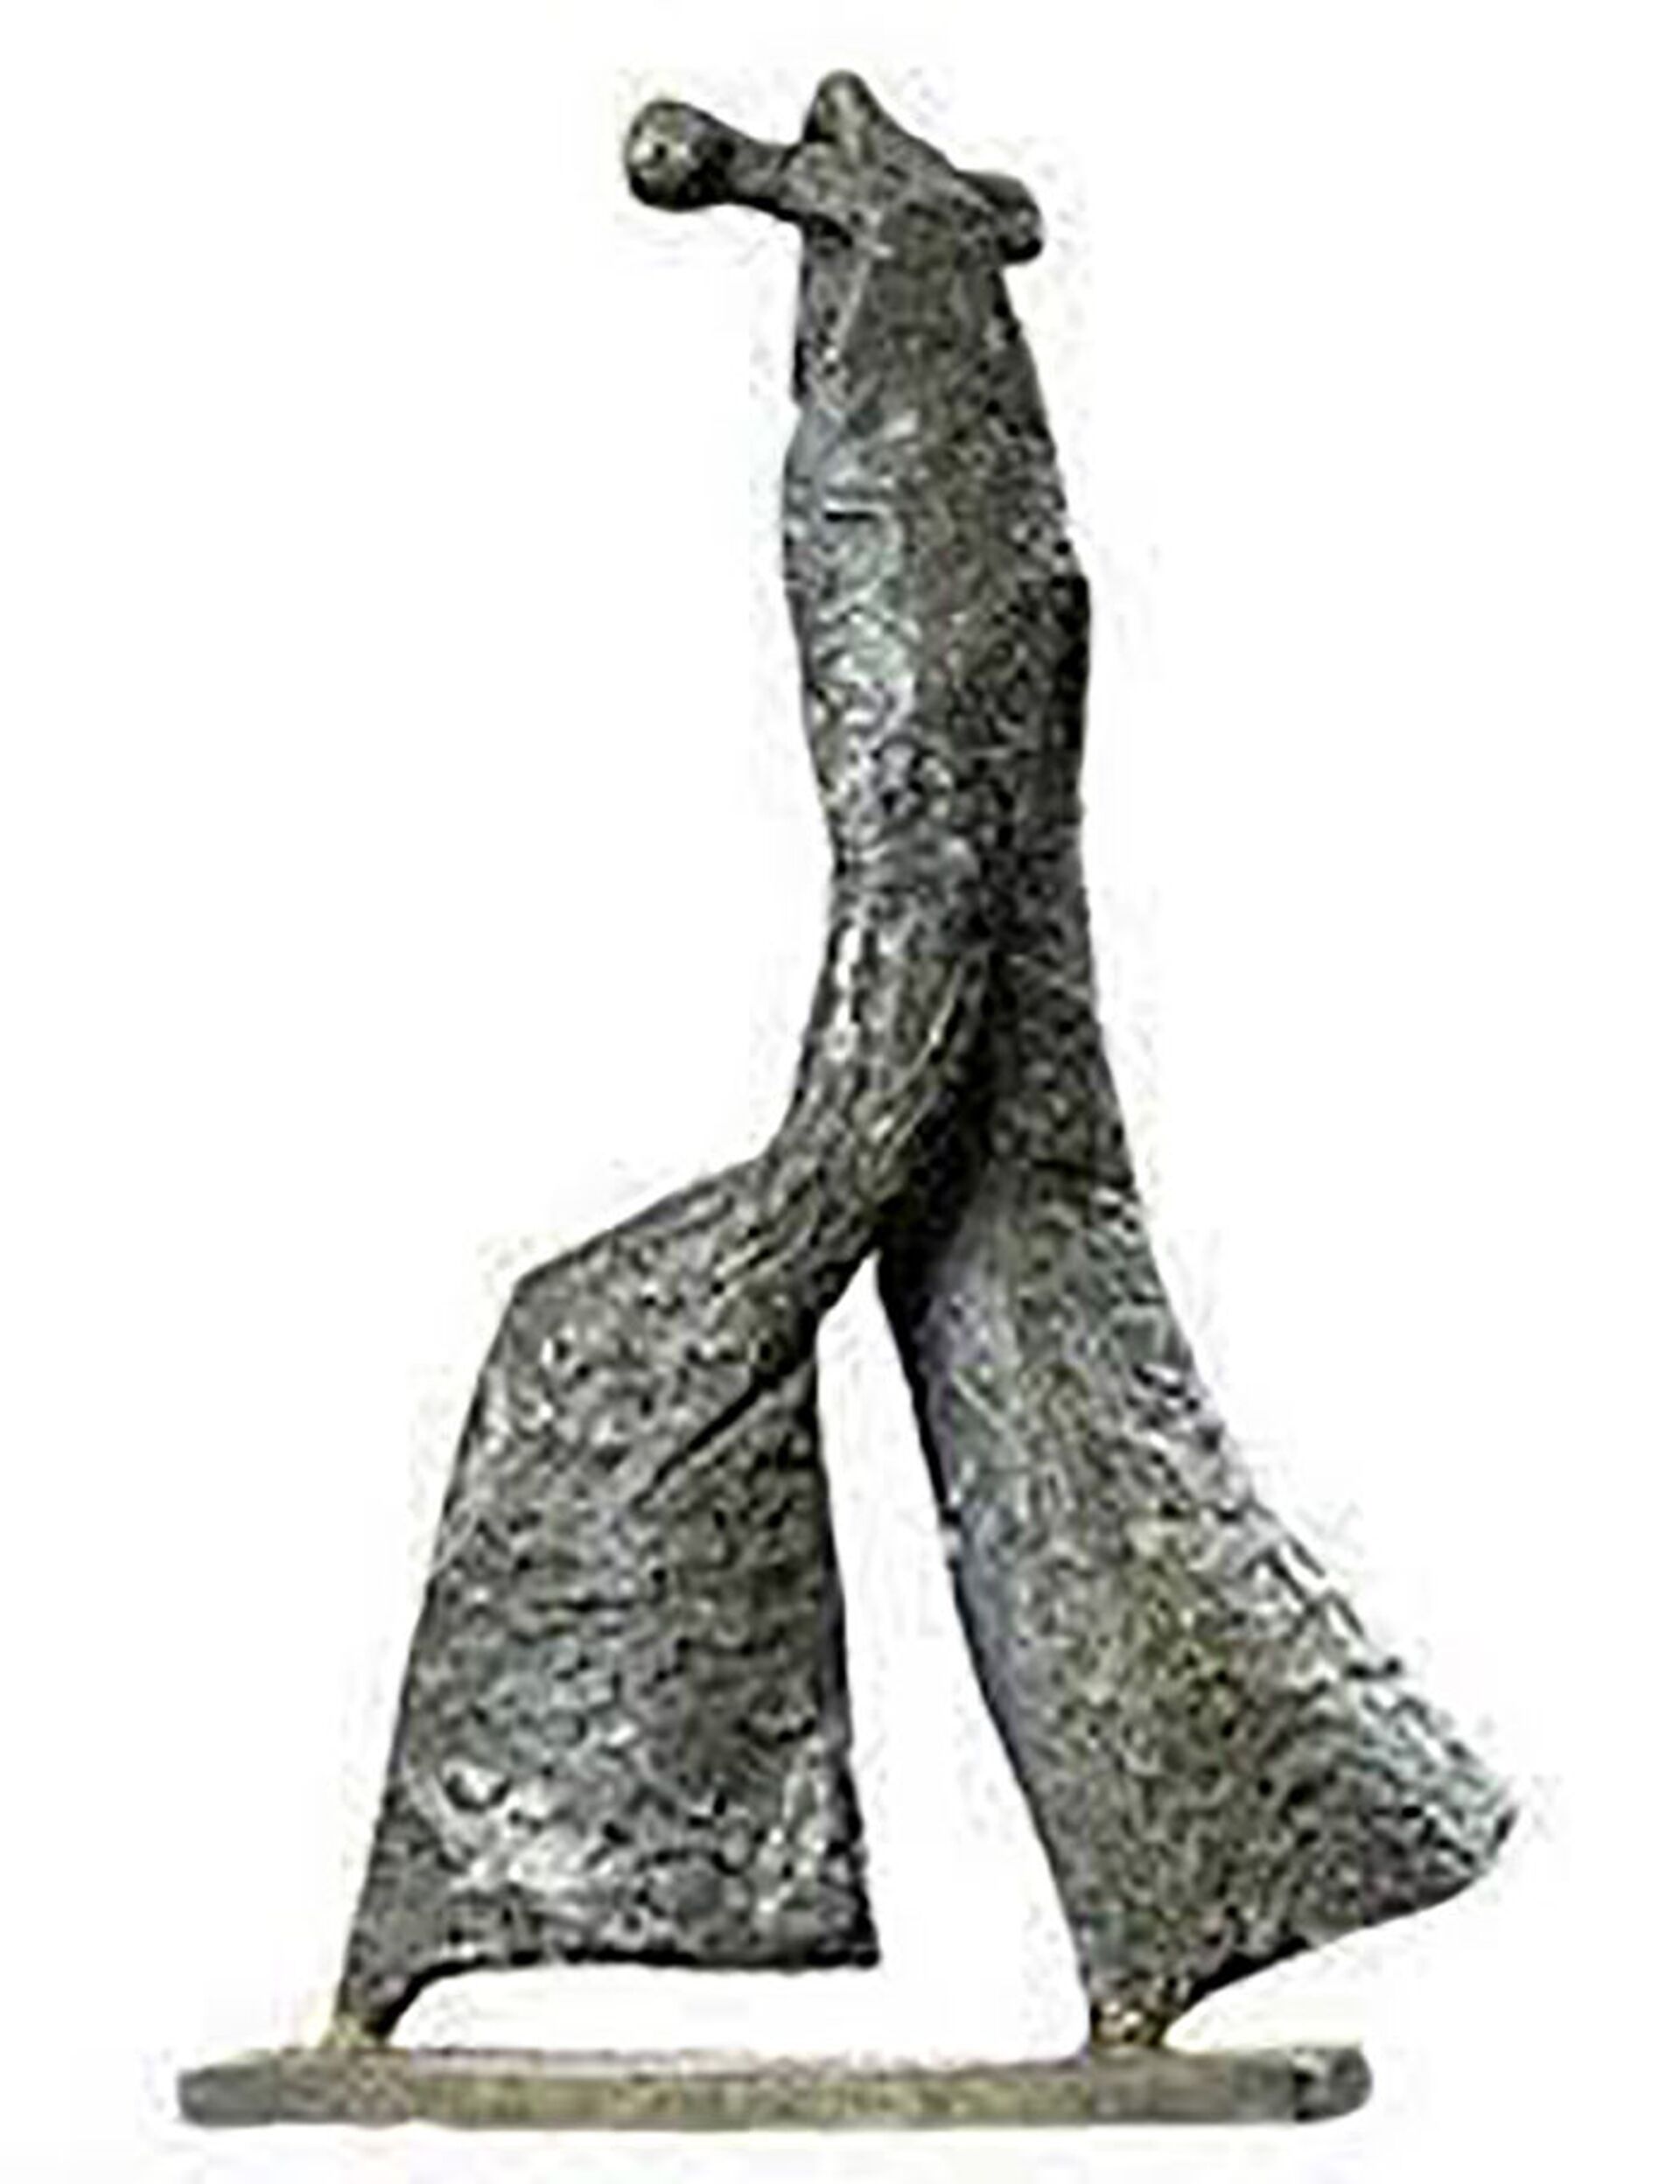 Скульптура «Шагающий человек», автор А. Чакмакчян - Sputnik Армения, 1920, 14.09.2021